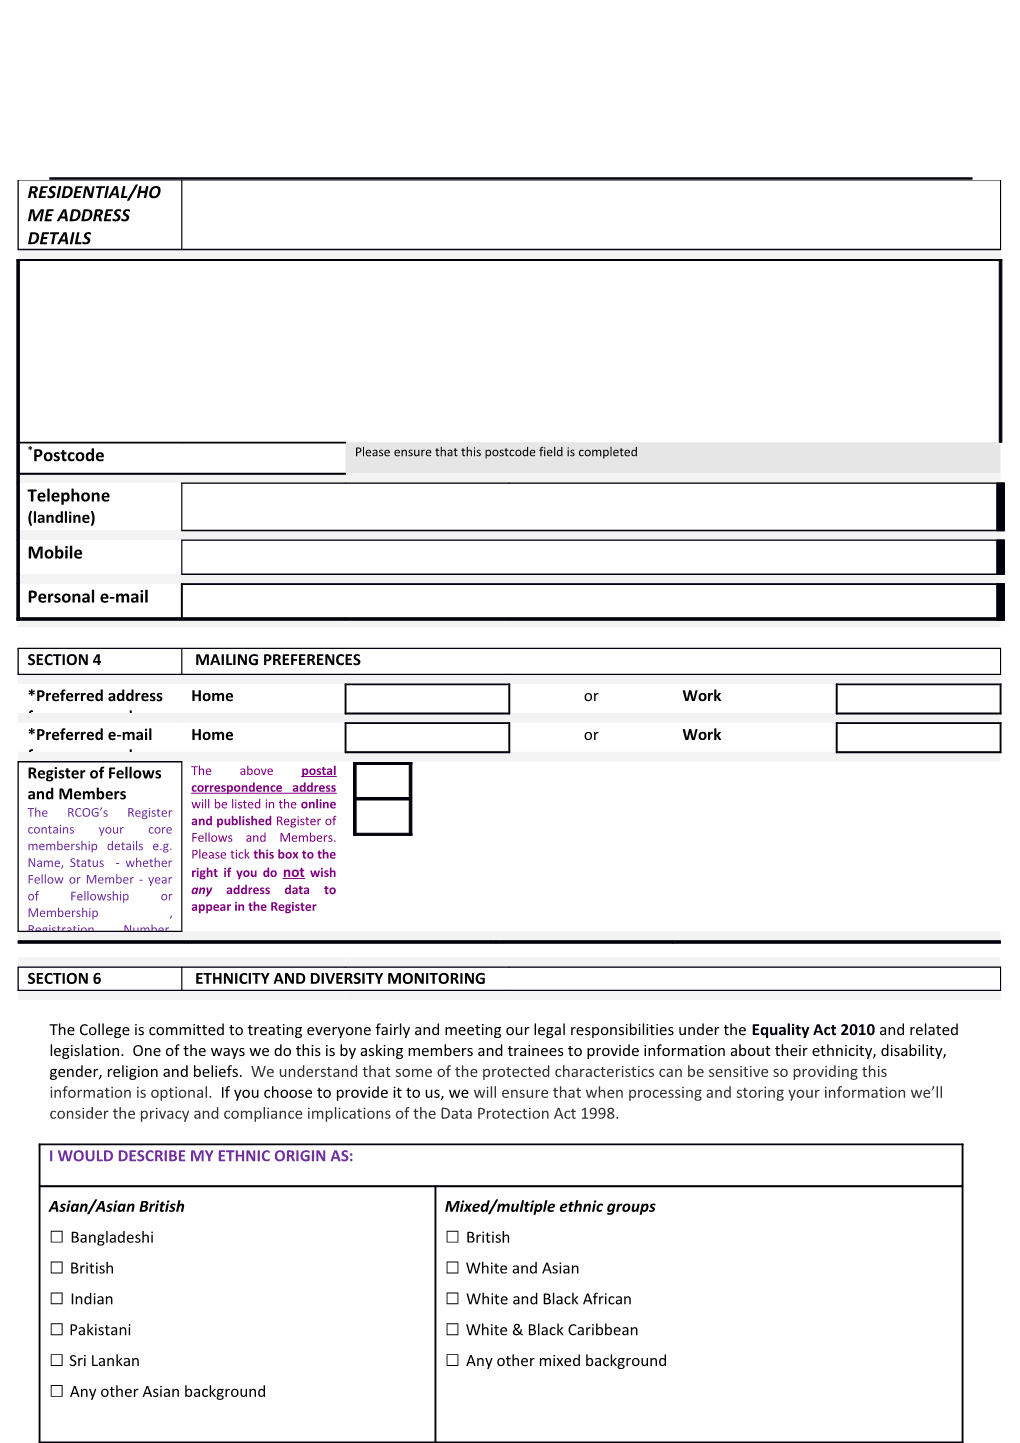 RCOG Member Register Form